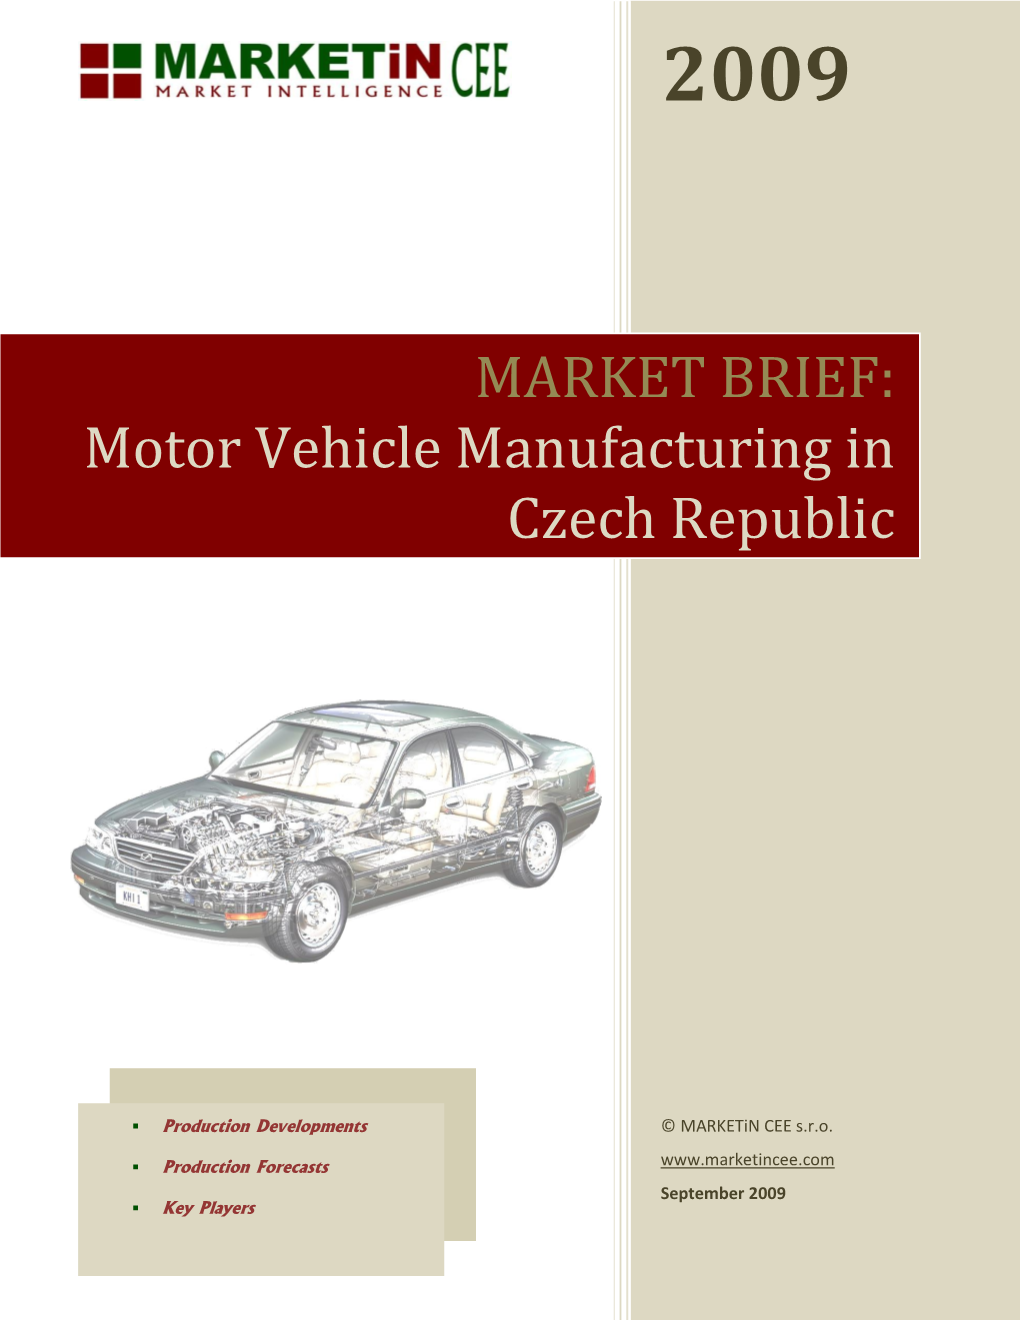 Motor Vehicle Manufacturing in Czech Republic